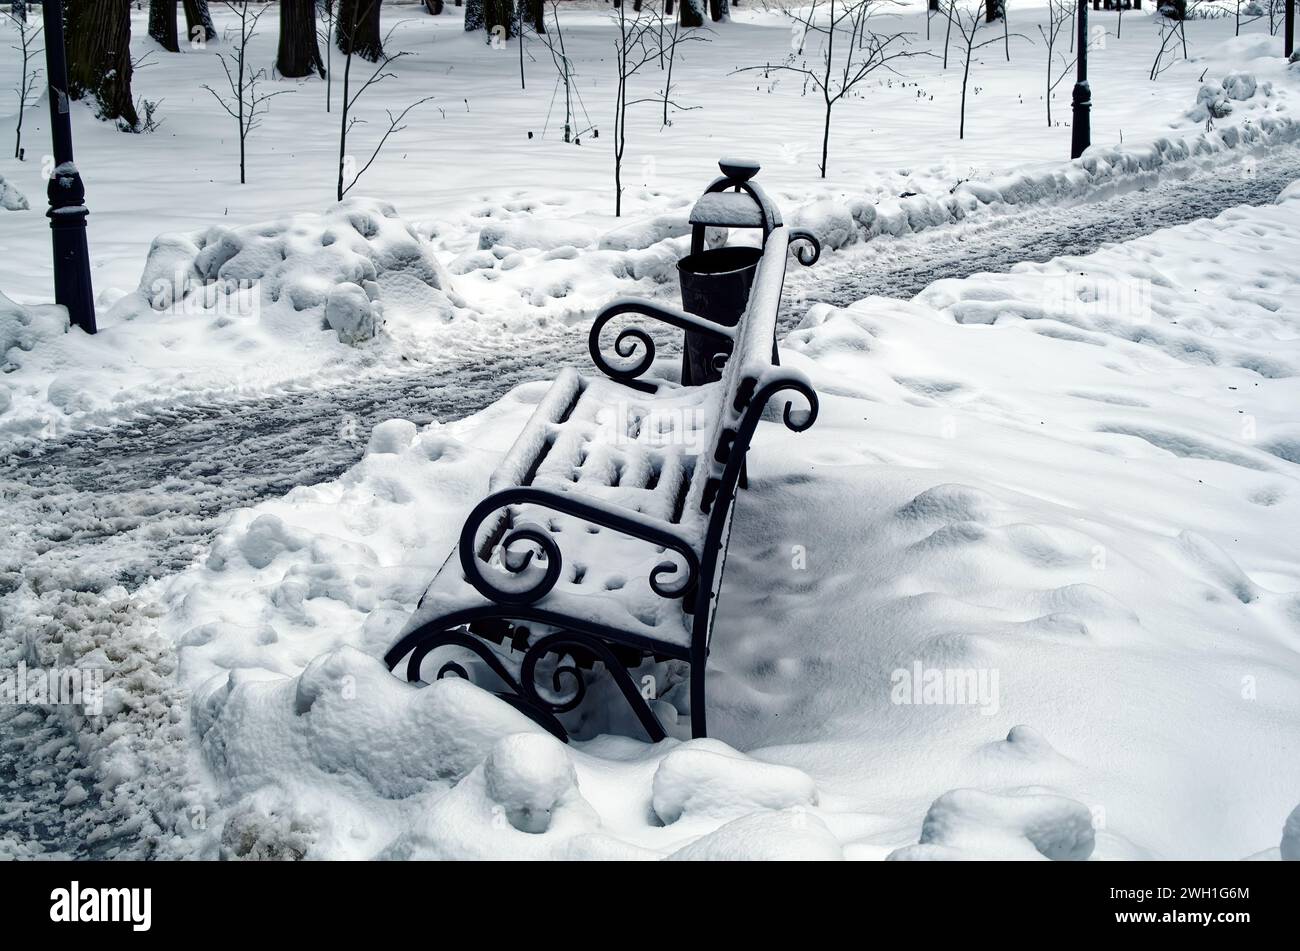 Banco al aire libre en la nieve en el parque, Moscú Foto de stock